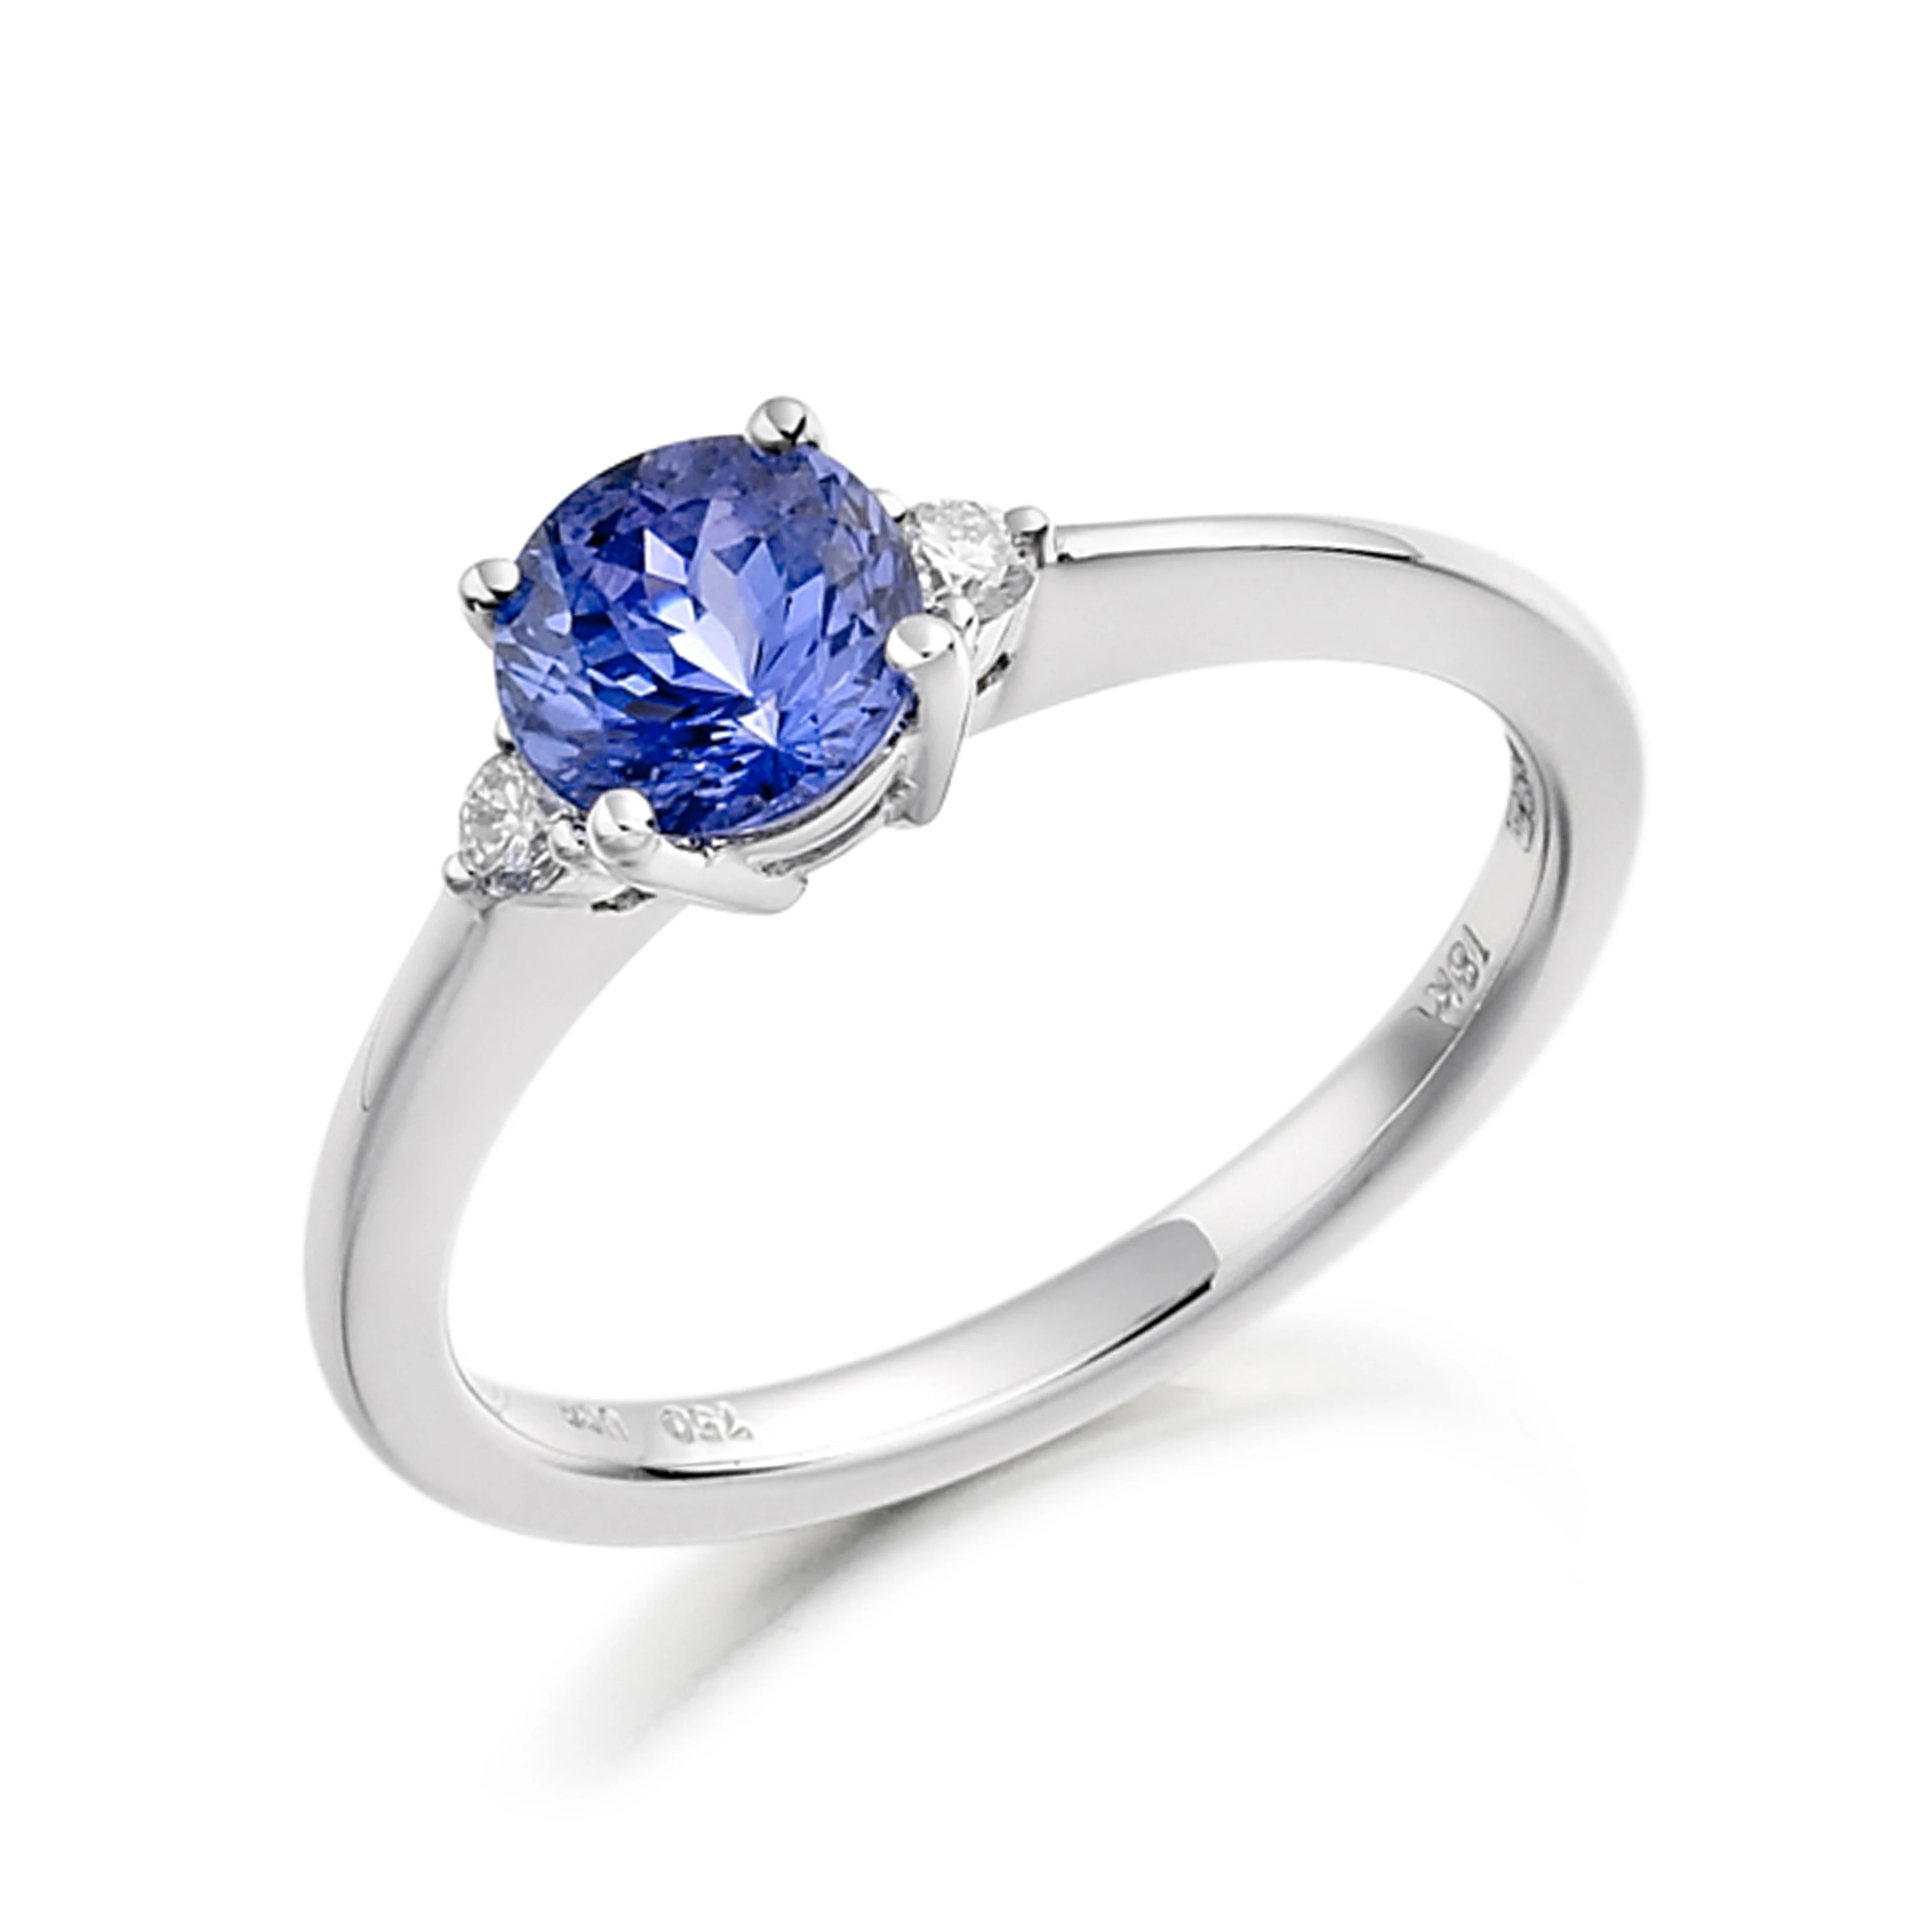 6mm Round Tanzanite Three Stone Diamond And Gemstone Engagement Ring